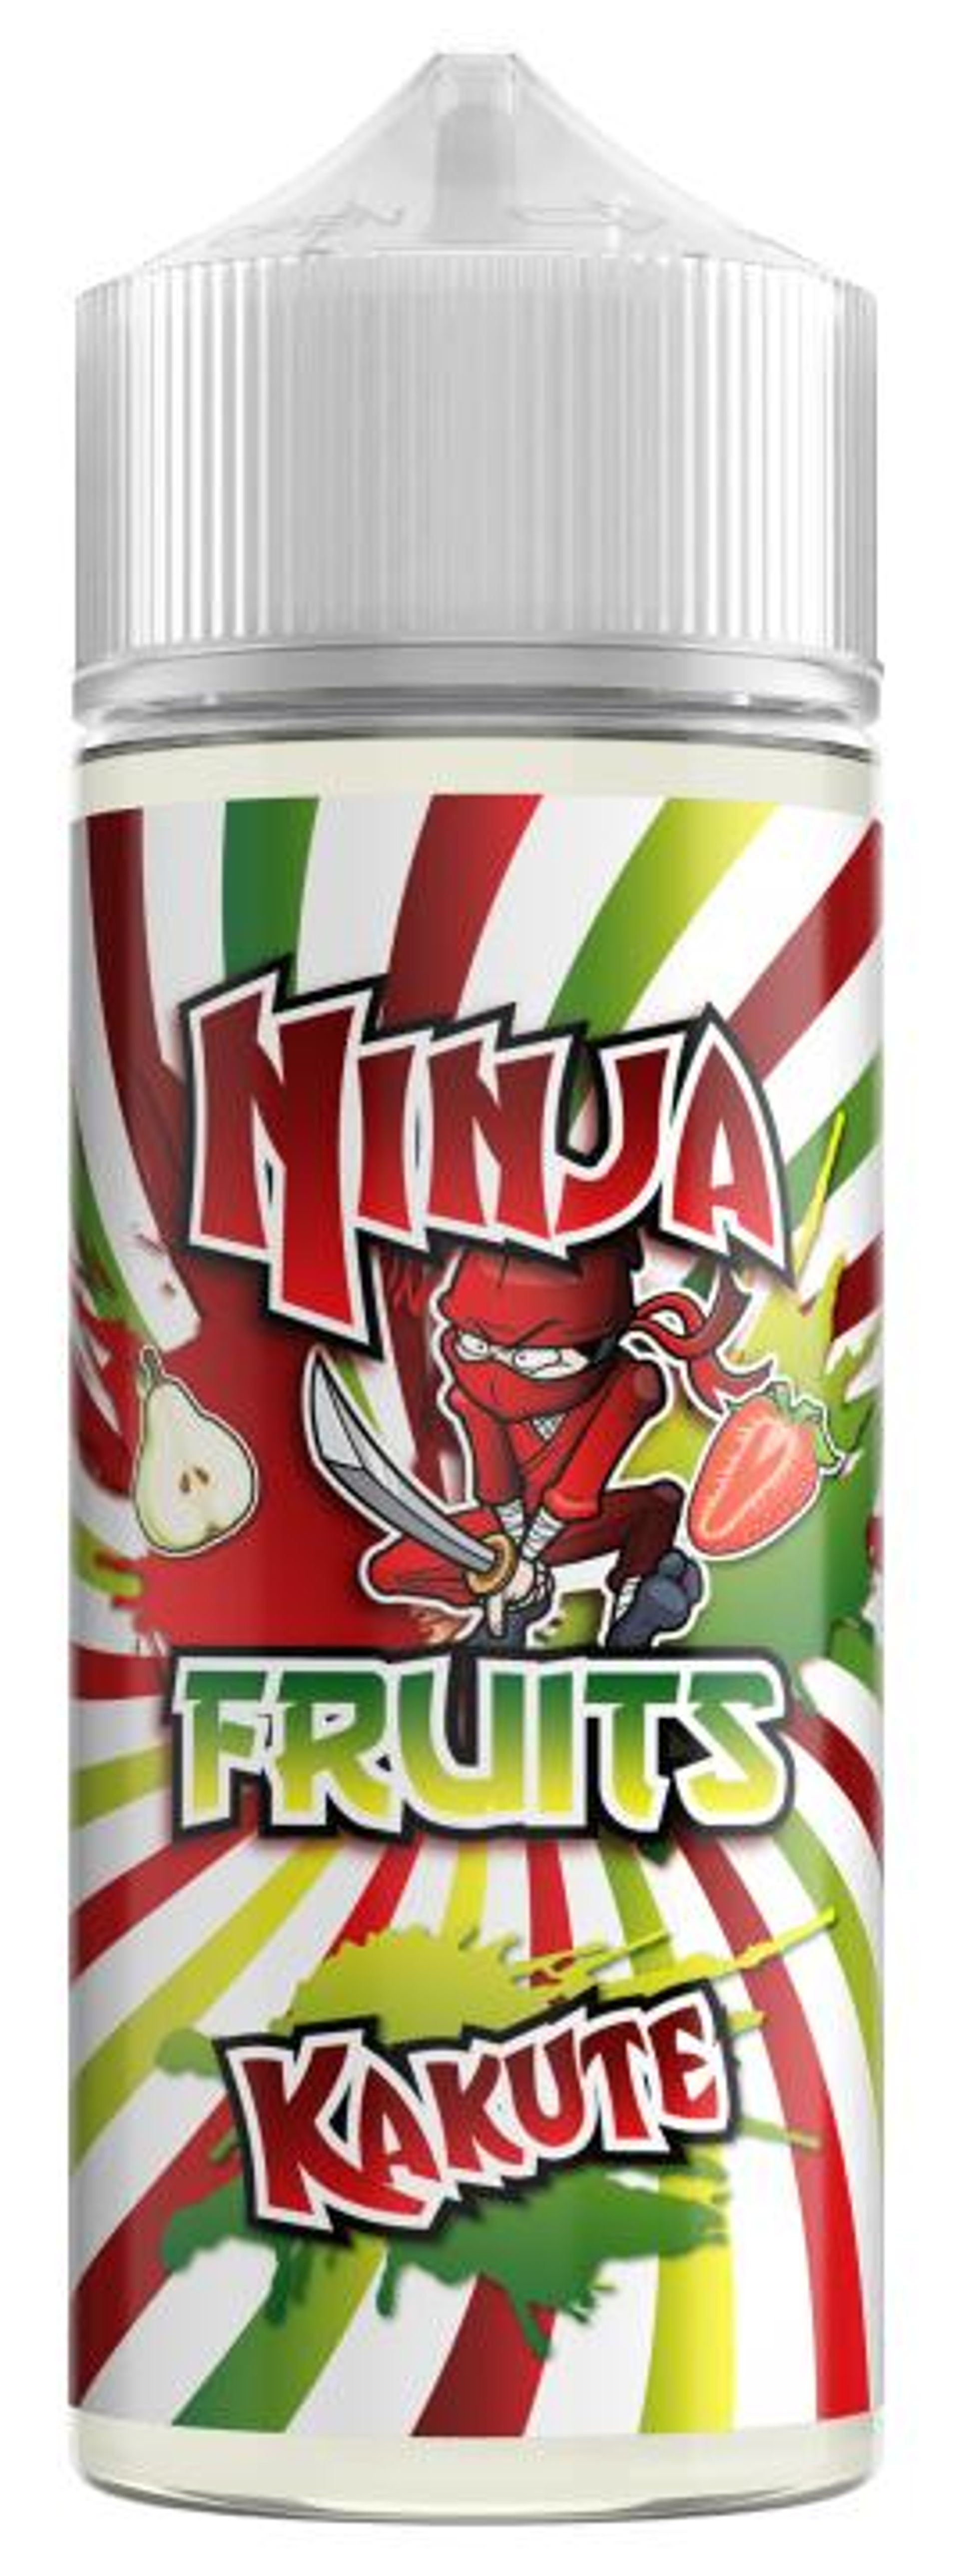 Image of Kakute by Ninja Fruits